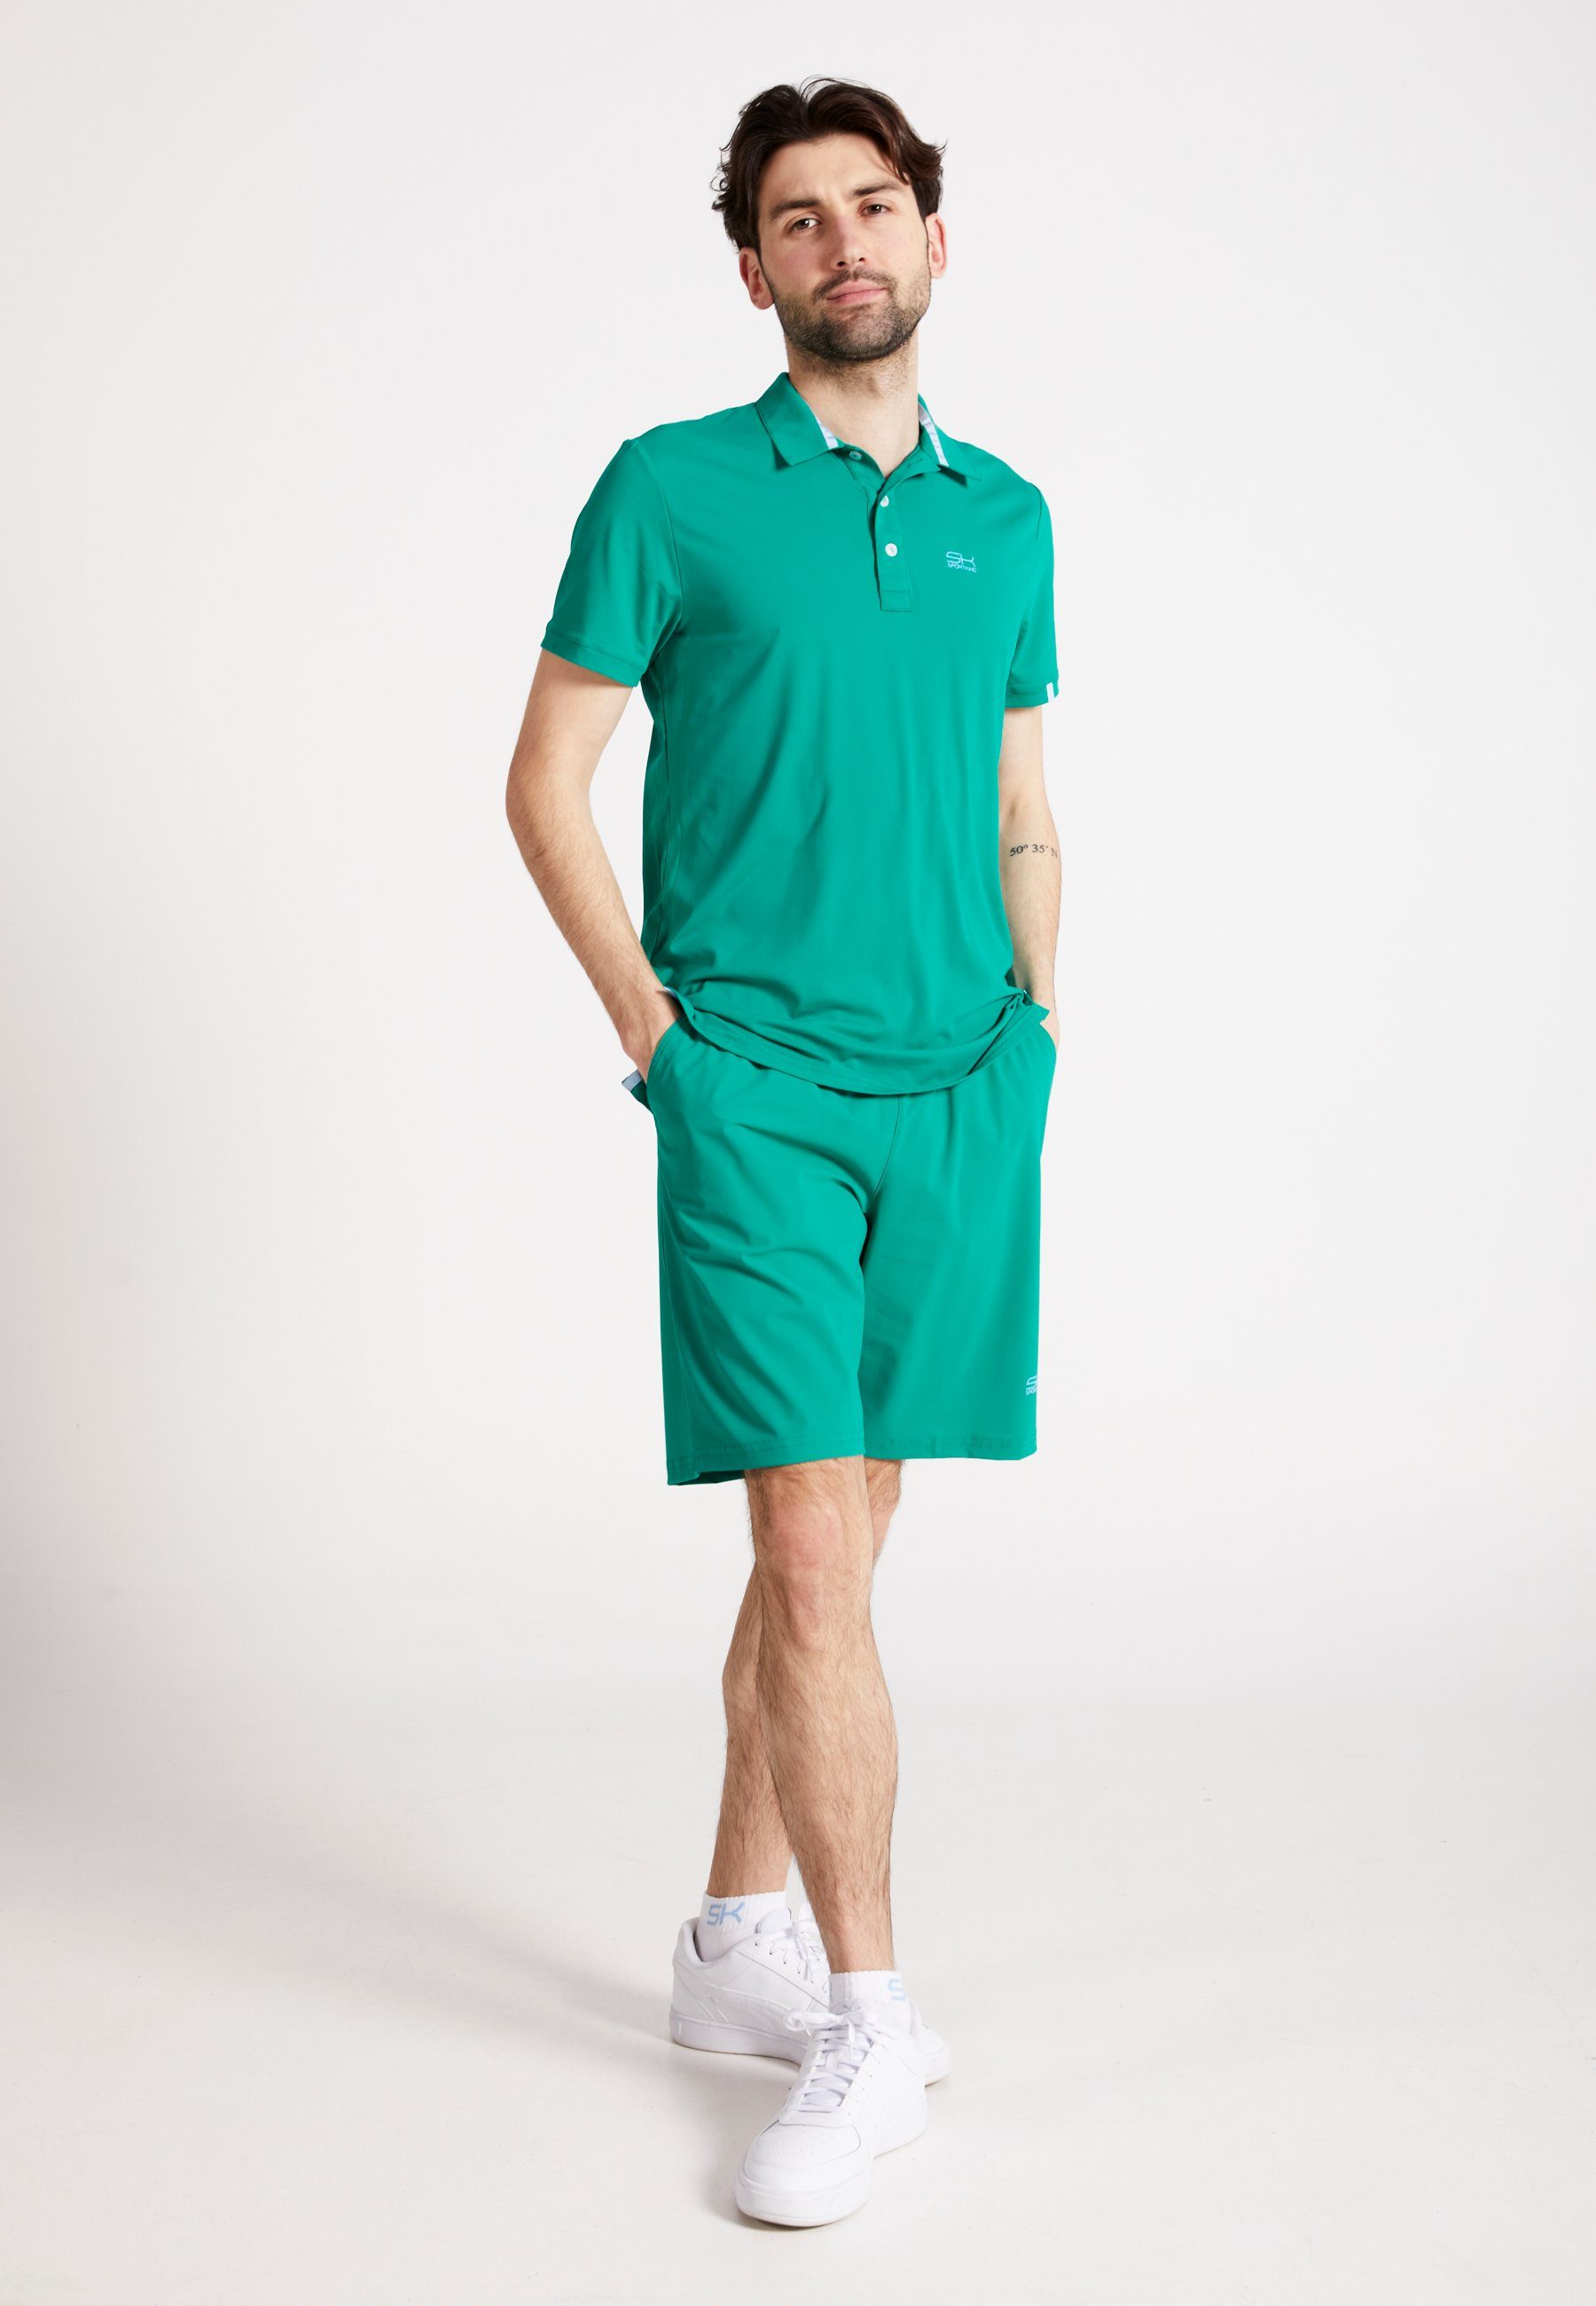 Funktionsshirt & Polo Kurzarm Shirt grün SPORTKIND Golf Jungen Herren smaragd